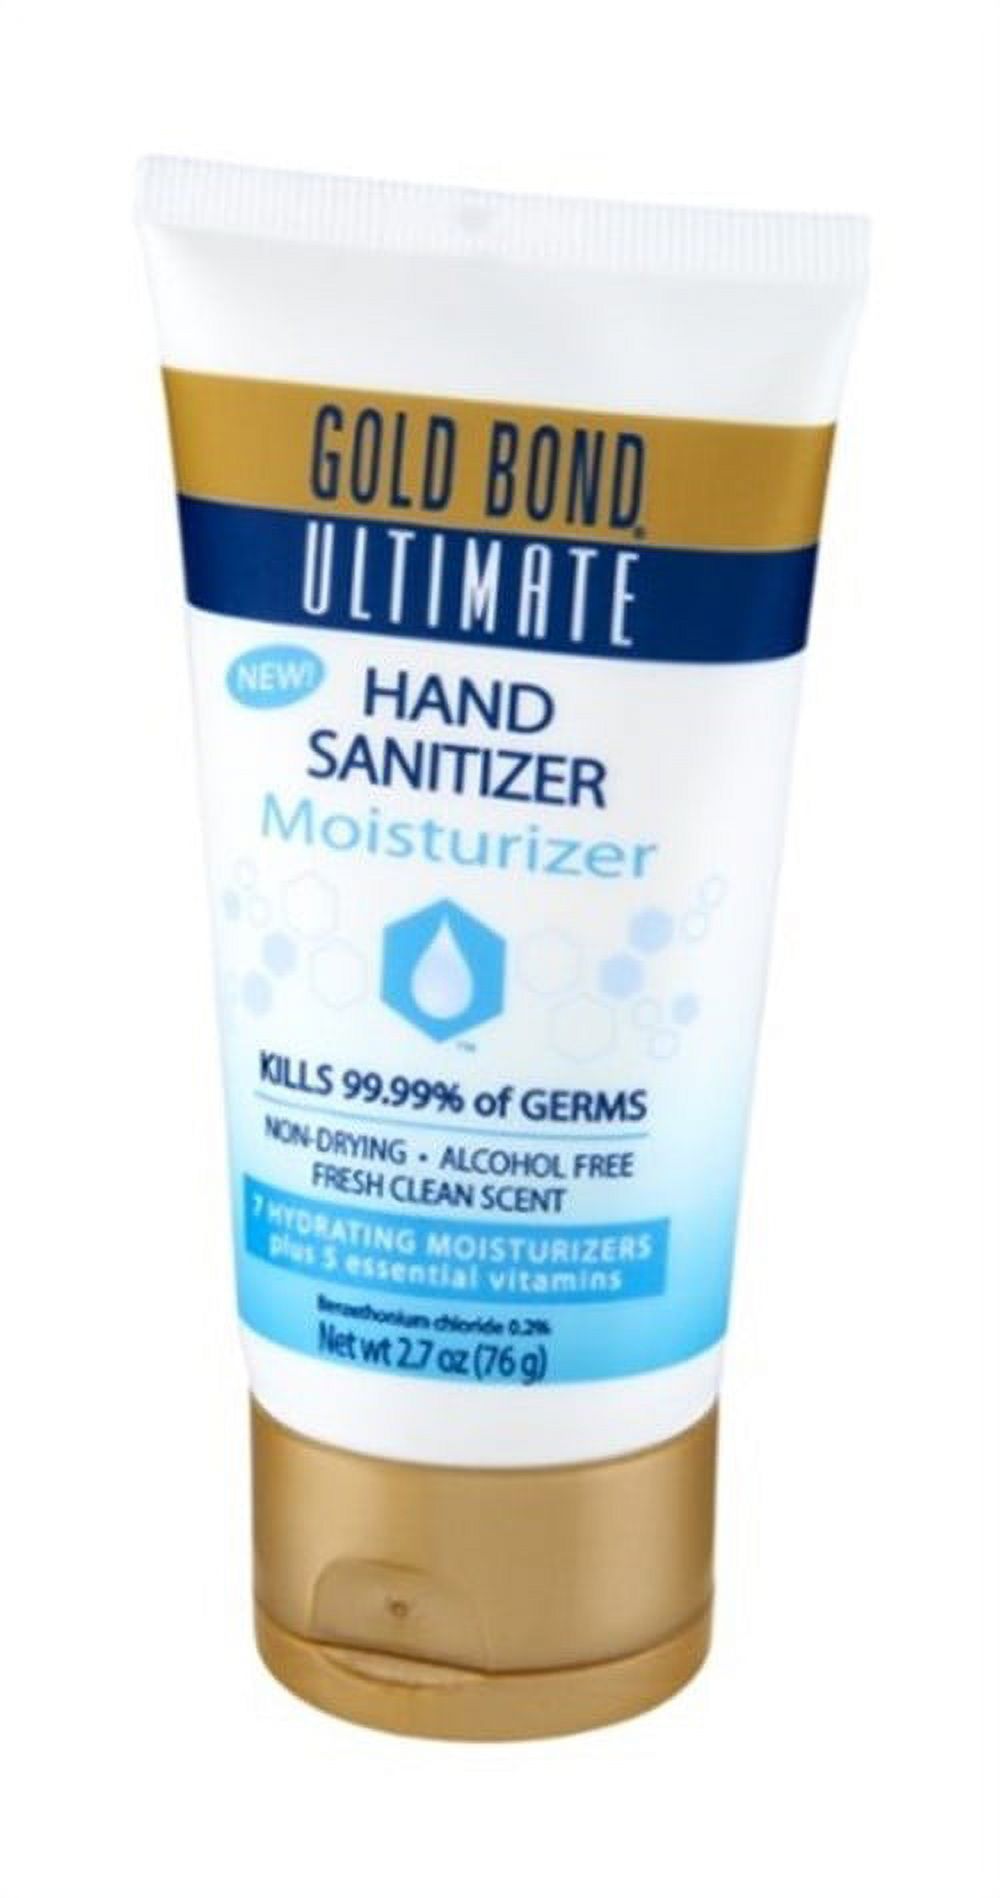 Gold Bond Ultimate Hand Sanitizer Moisturizer, 2.7oz - image 2 of 4